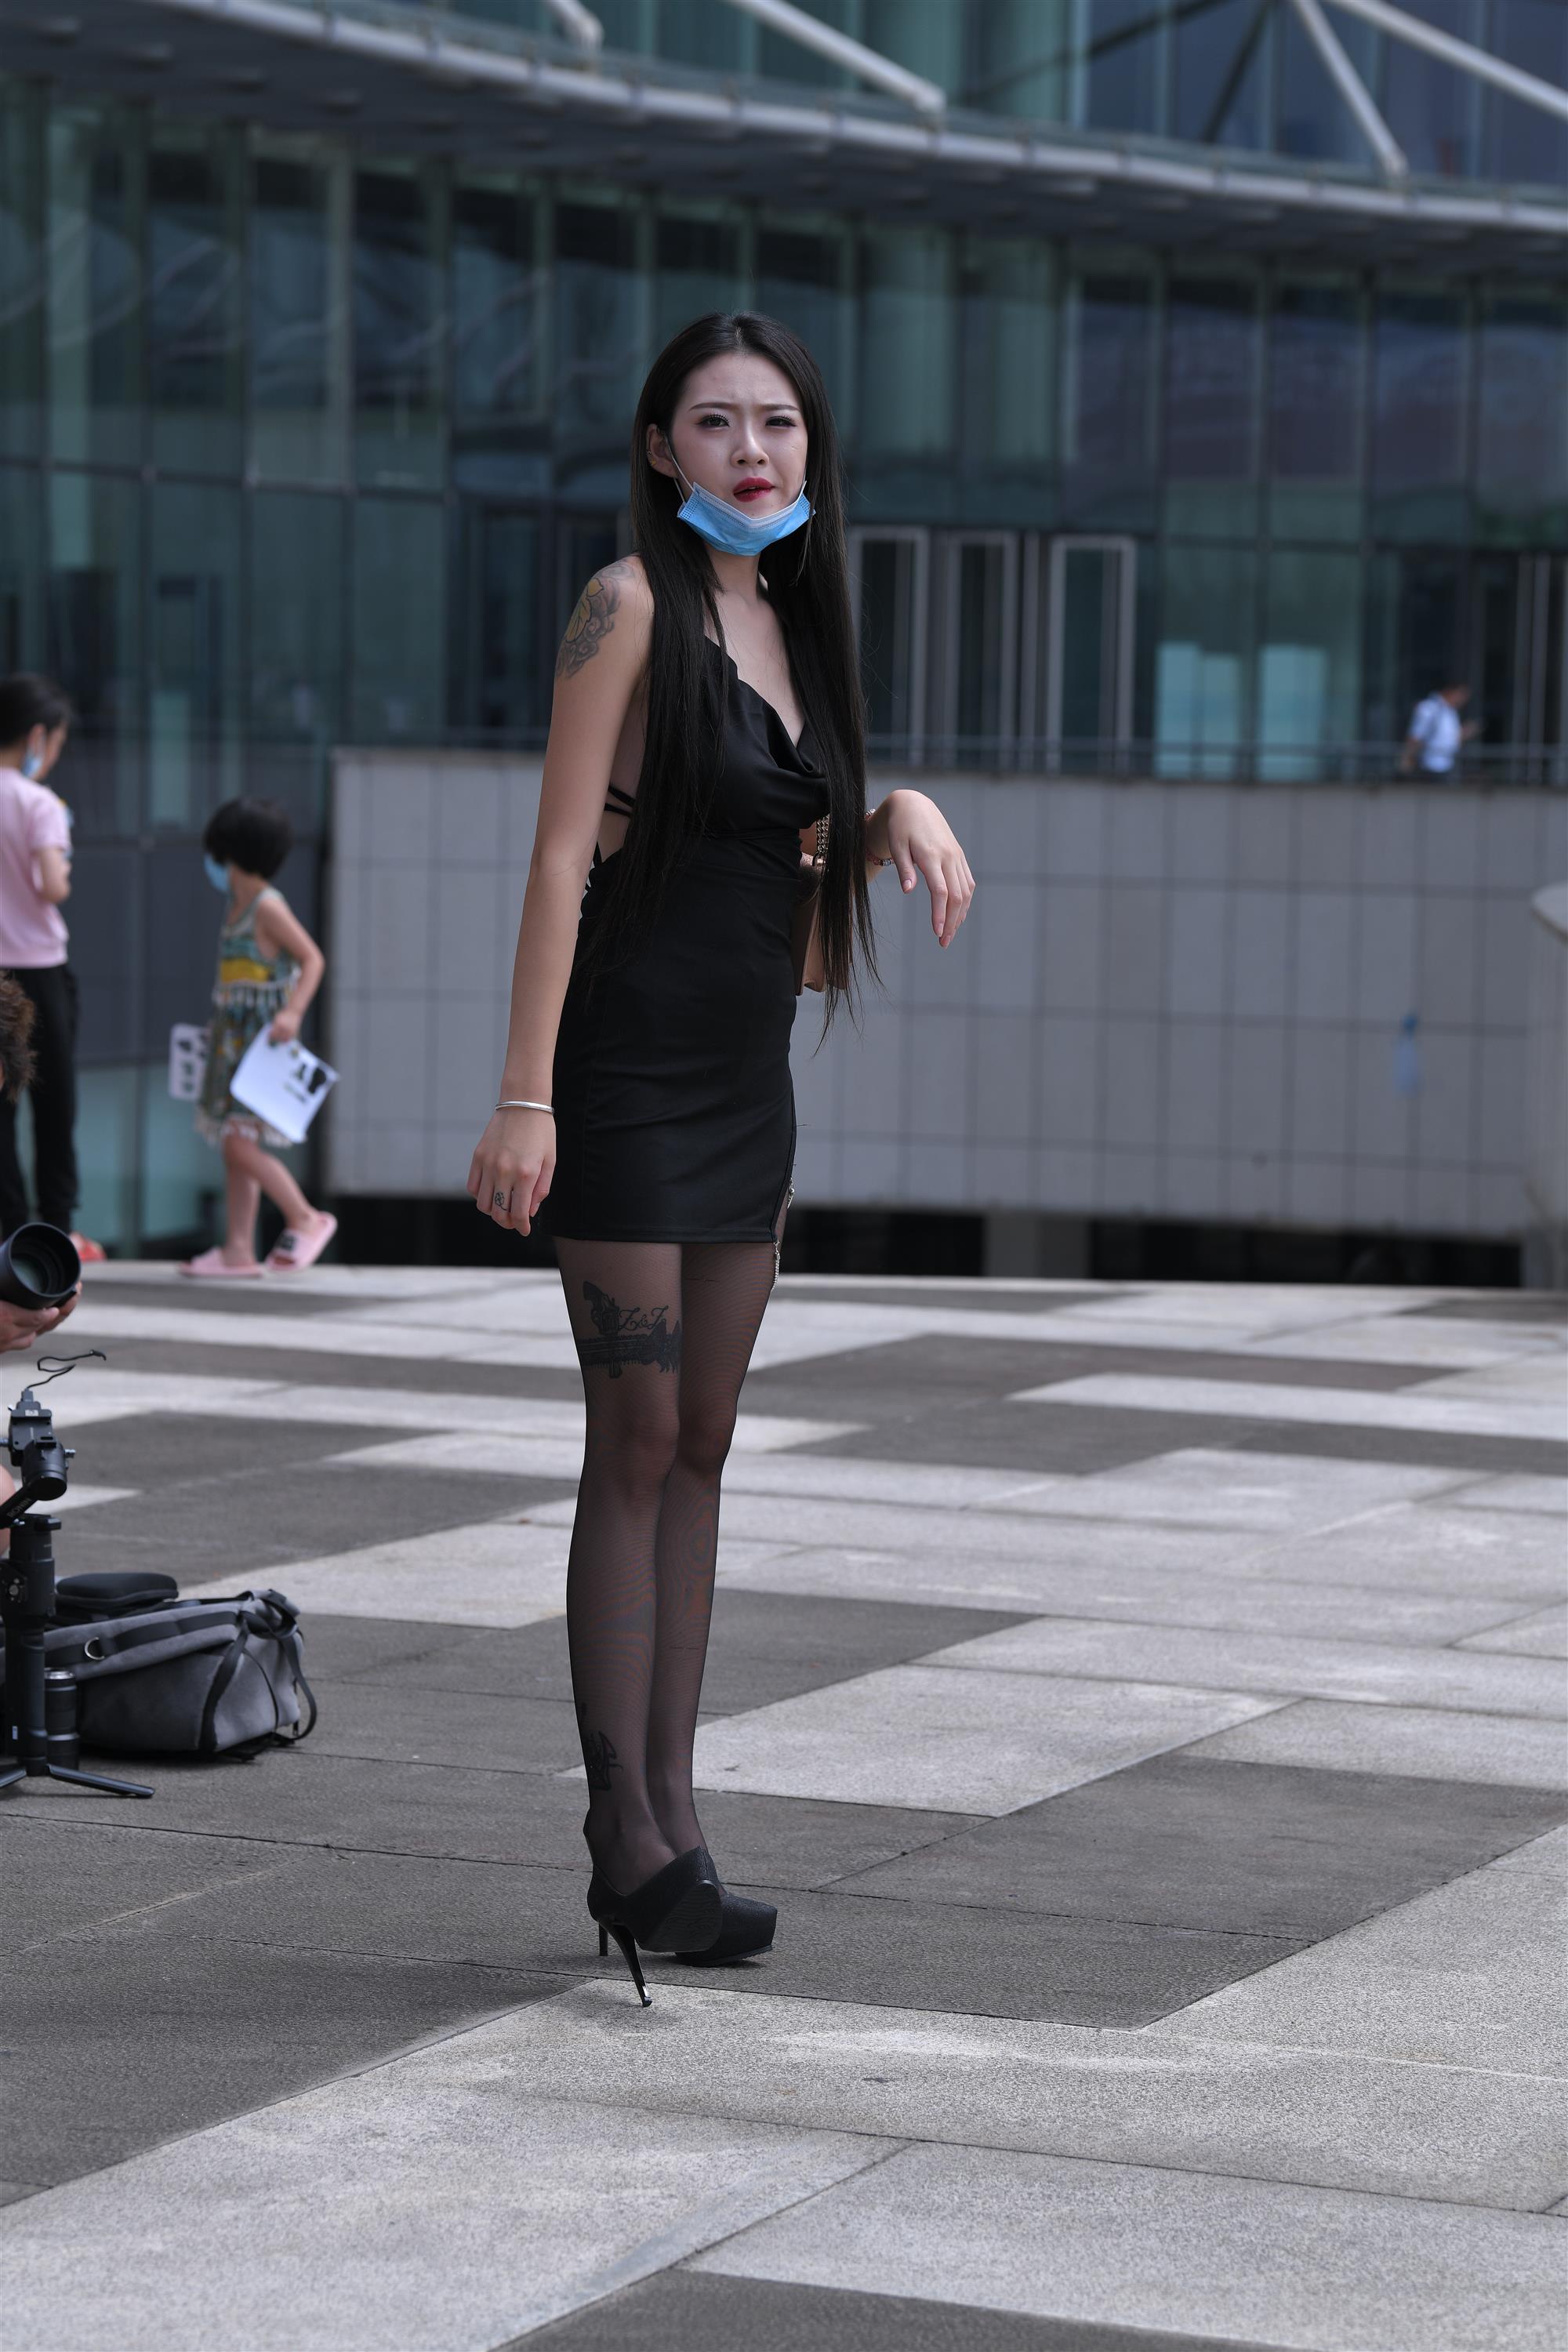 Street black stockings and high heels - 19.jpg